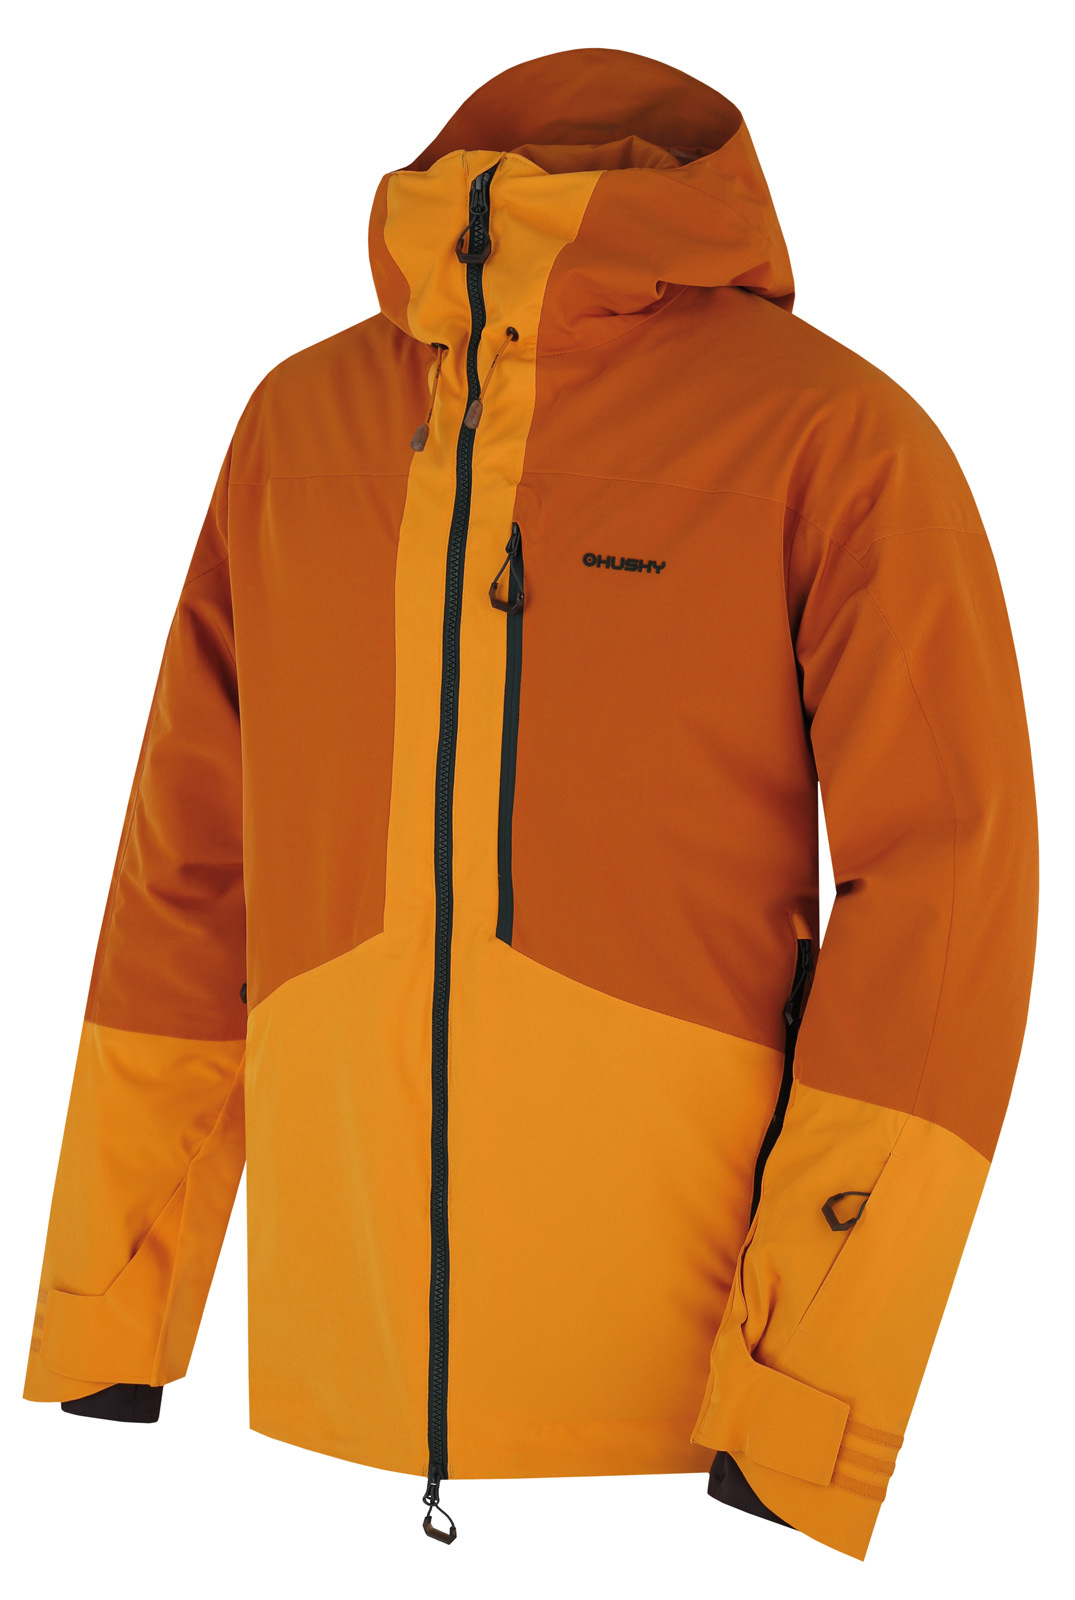 E-shop Husky Pánská lyžařská bunda Gomez M mustard/yellow